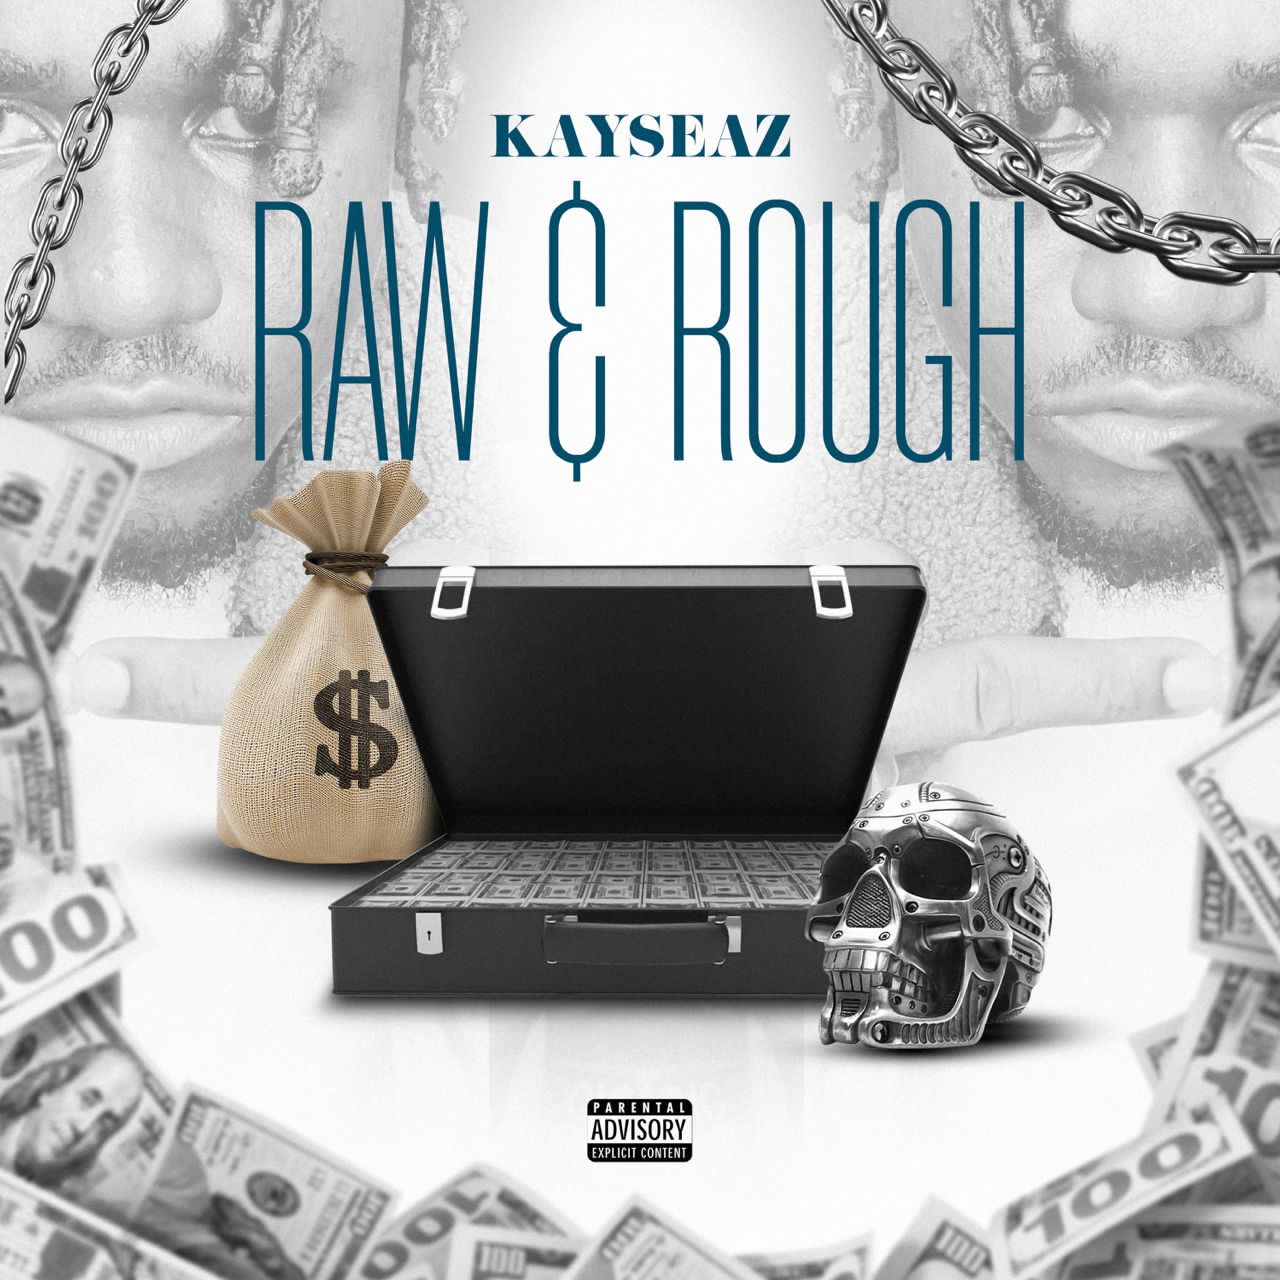 [Music] Kayseaz - Raw & Rough (prod. Axpain Marshal)